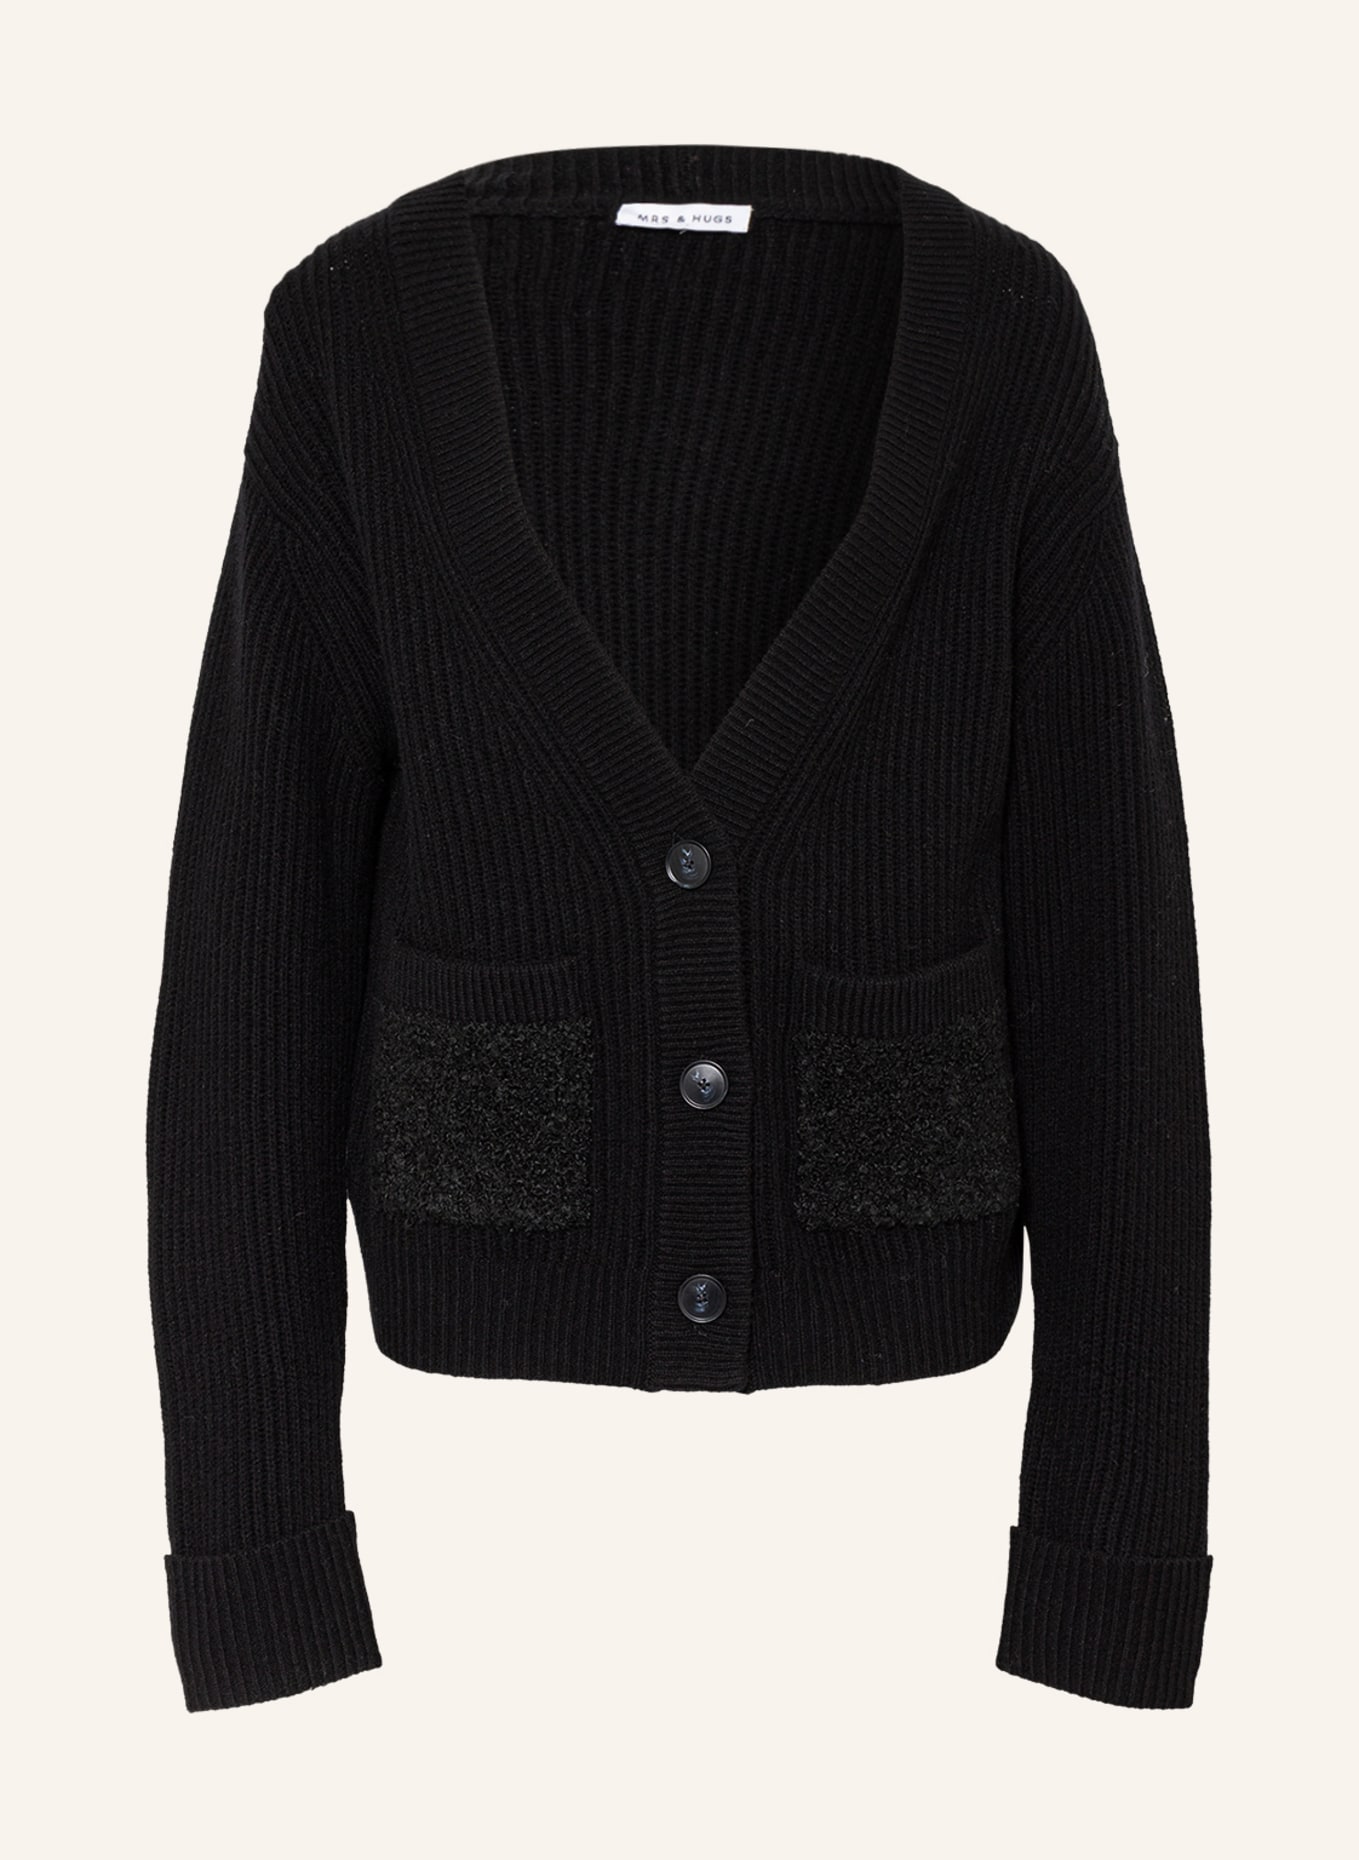 MRS & HUGS Cardigan in merino wool, Color: BLACK (Image 1)